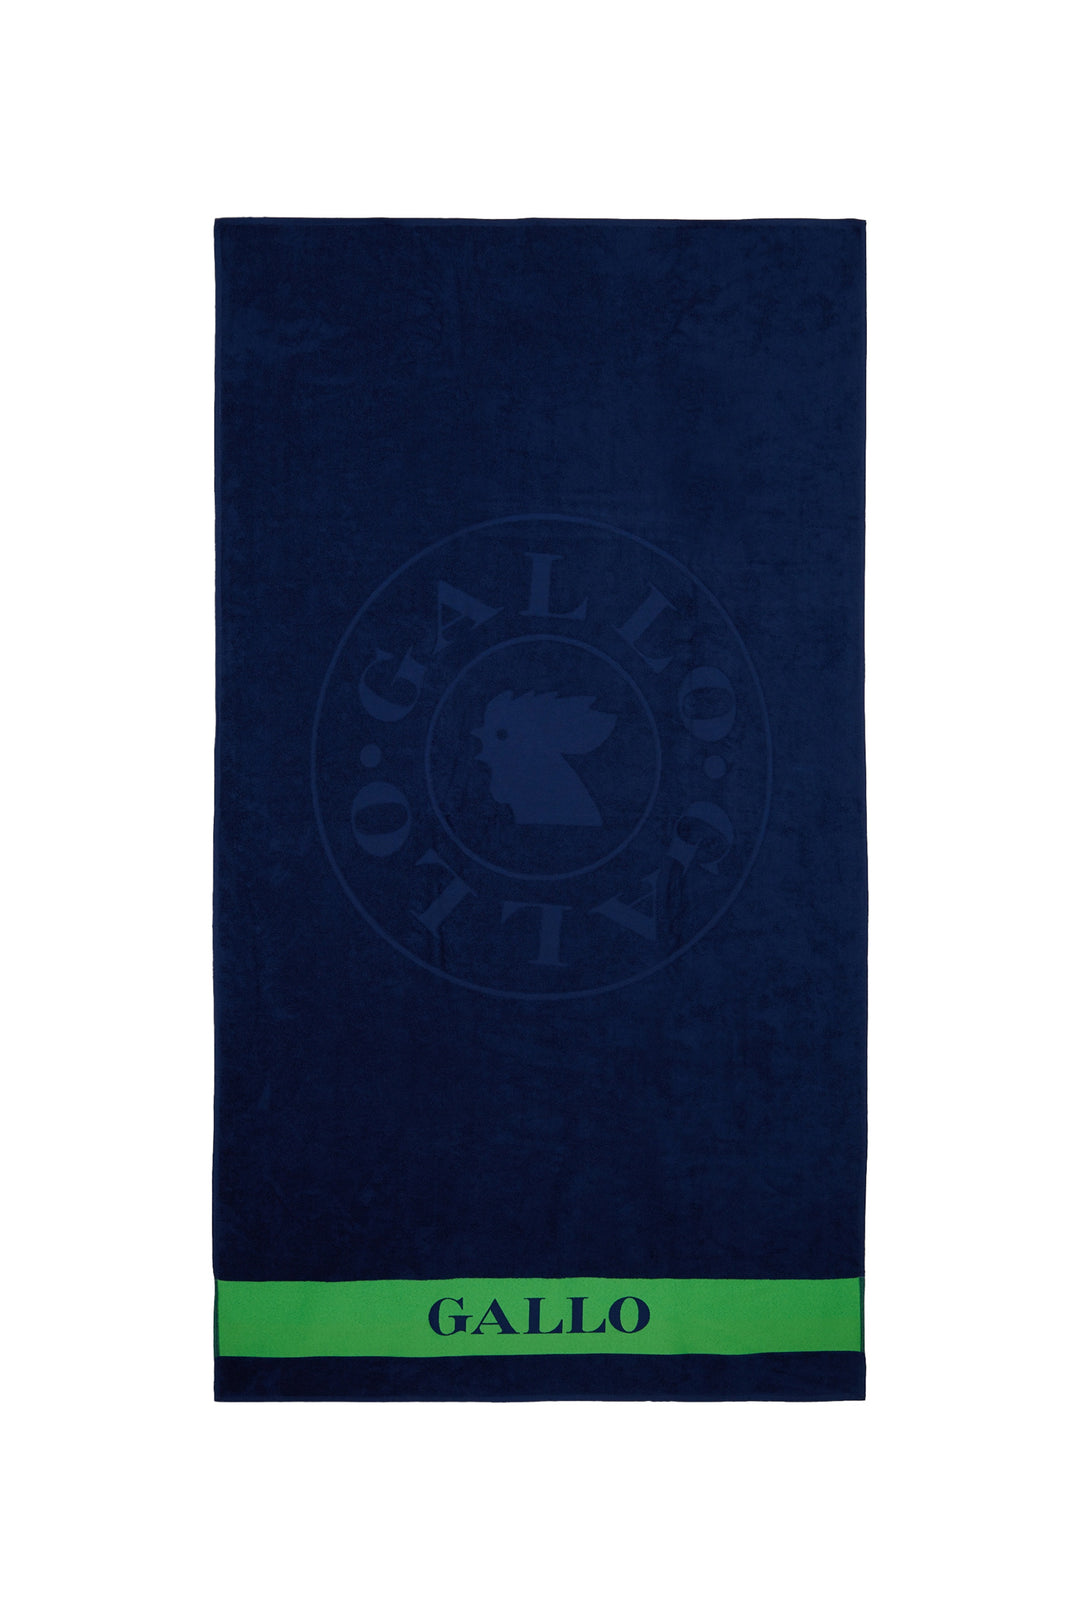 GALLO Telo mare cotone tinta unita con logo gallo blu - Mancinelli 1954